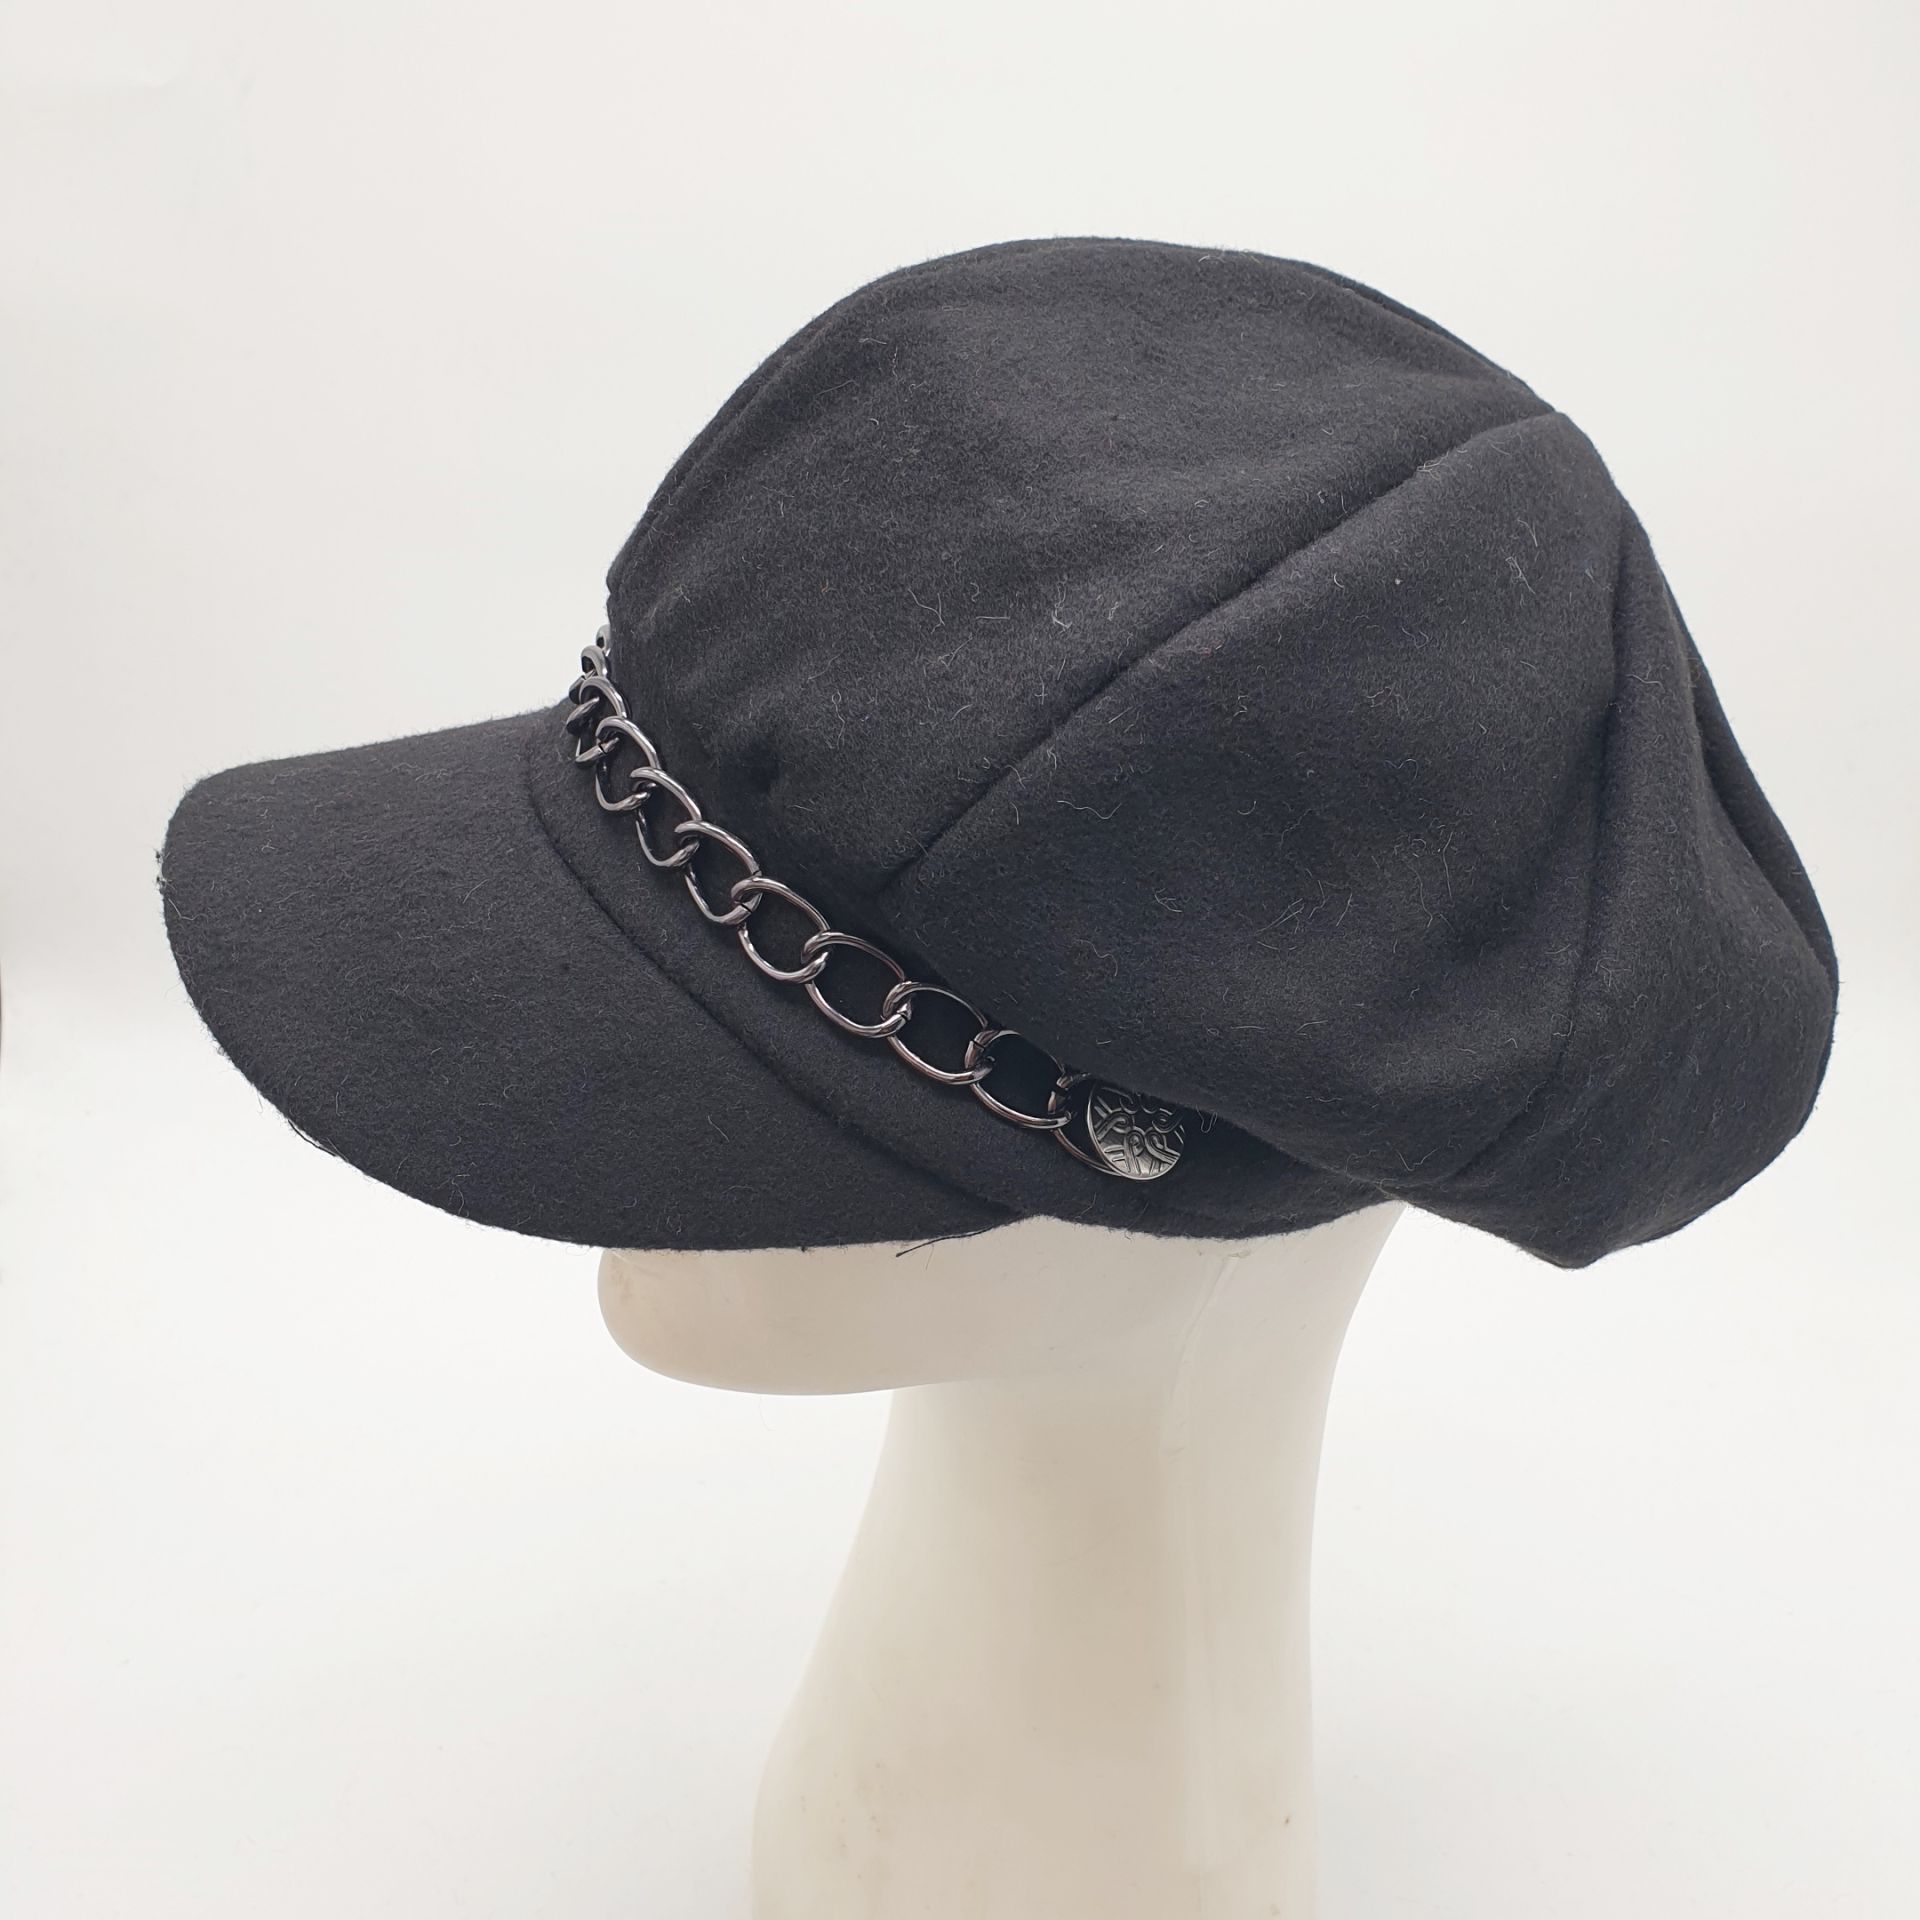 Siyah Renk Kaşe Kumaş Siperli Bayan Şapka